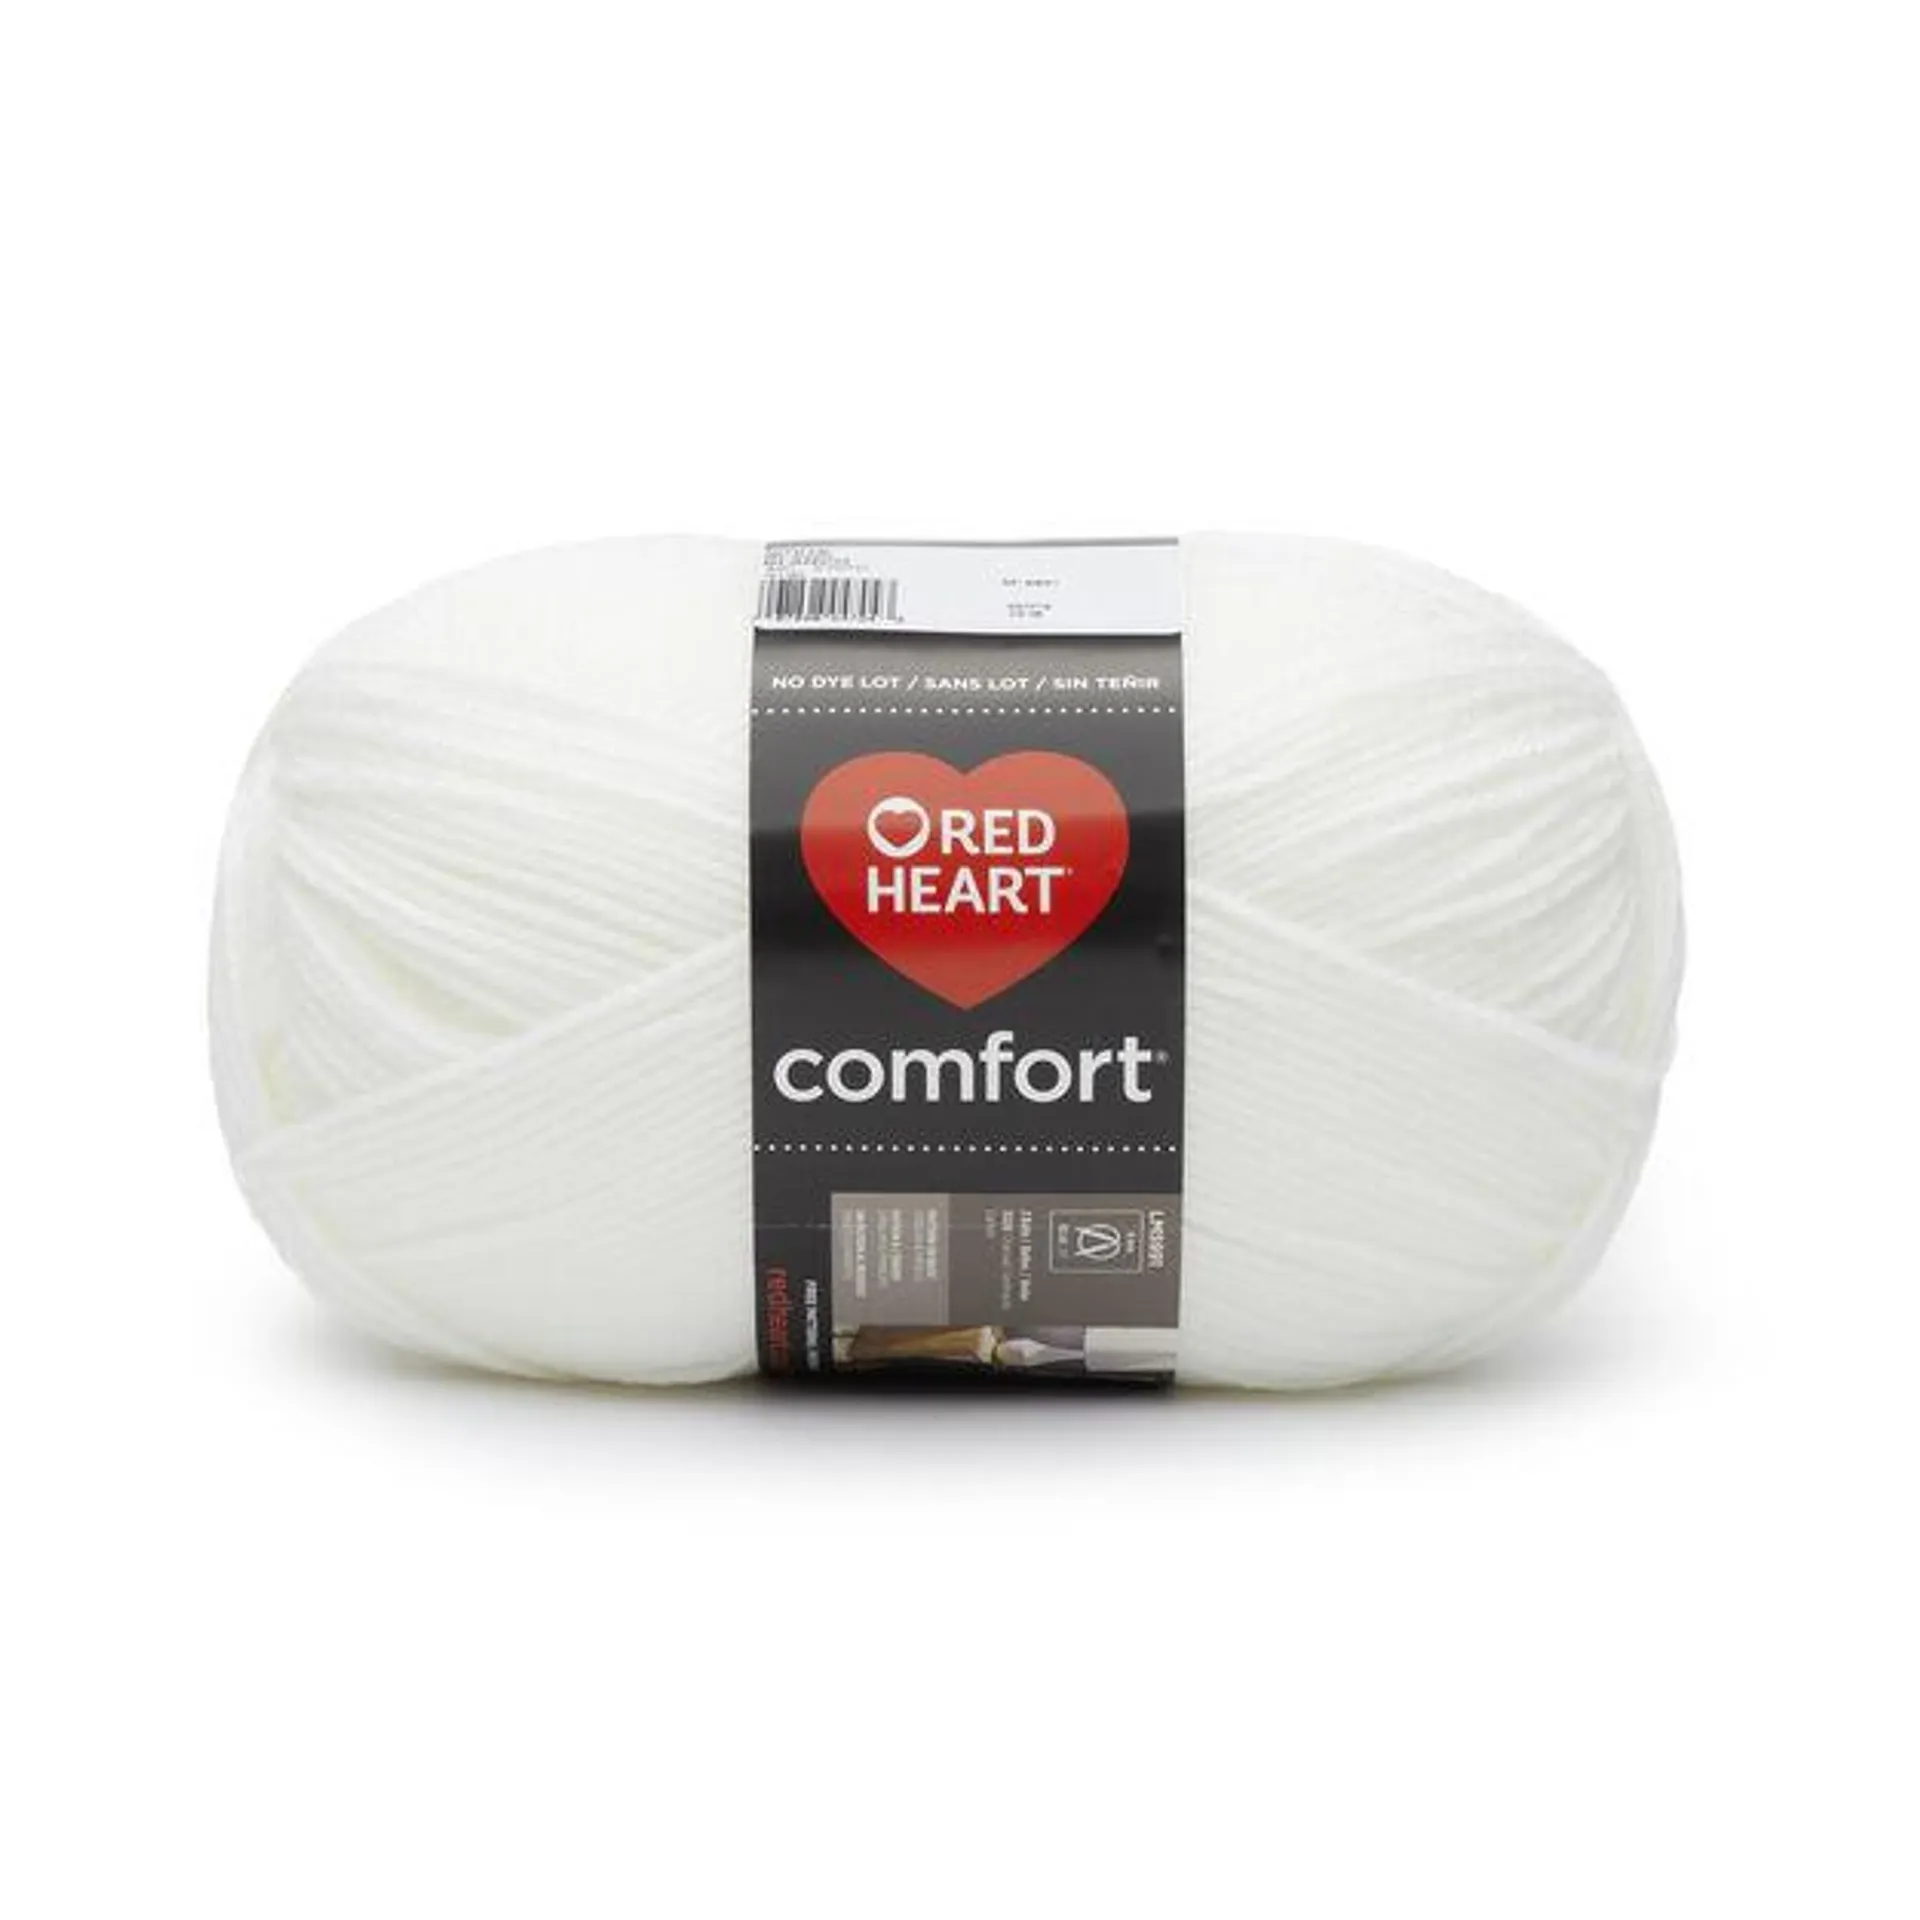 Comfort Flecks & Shimmers - 340g - Red Heart